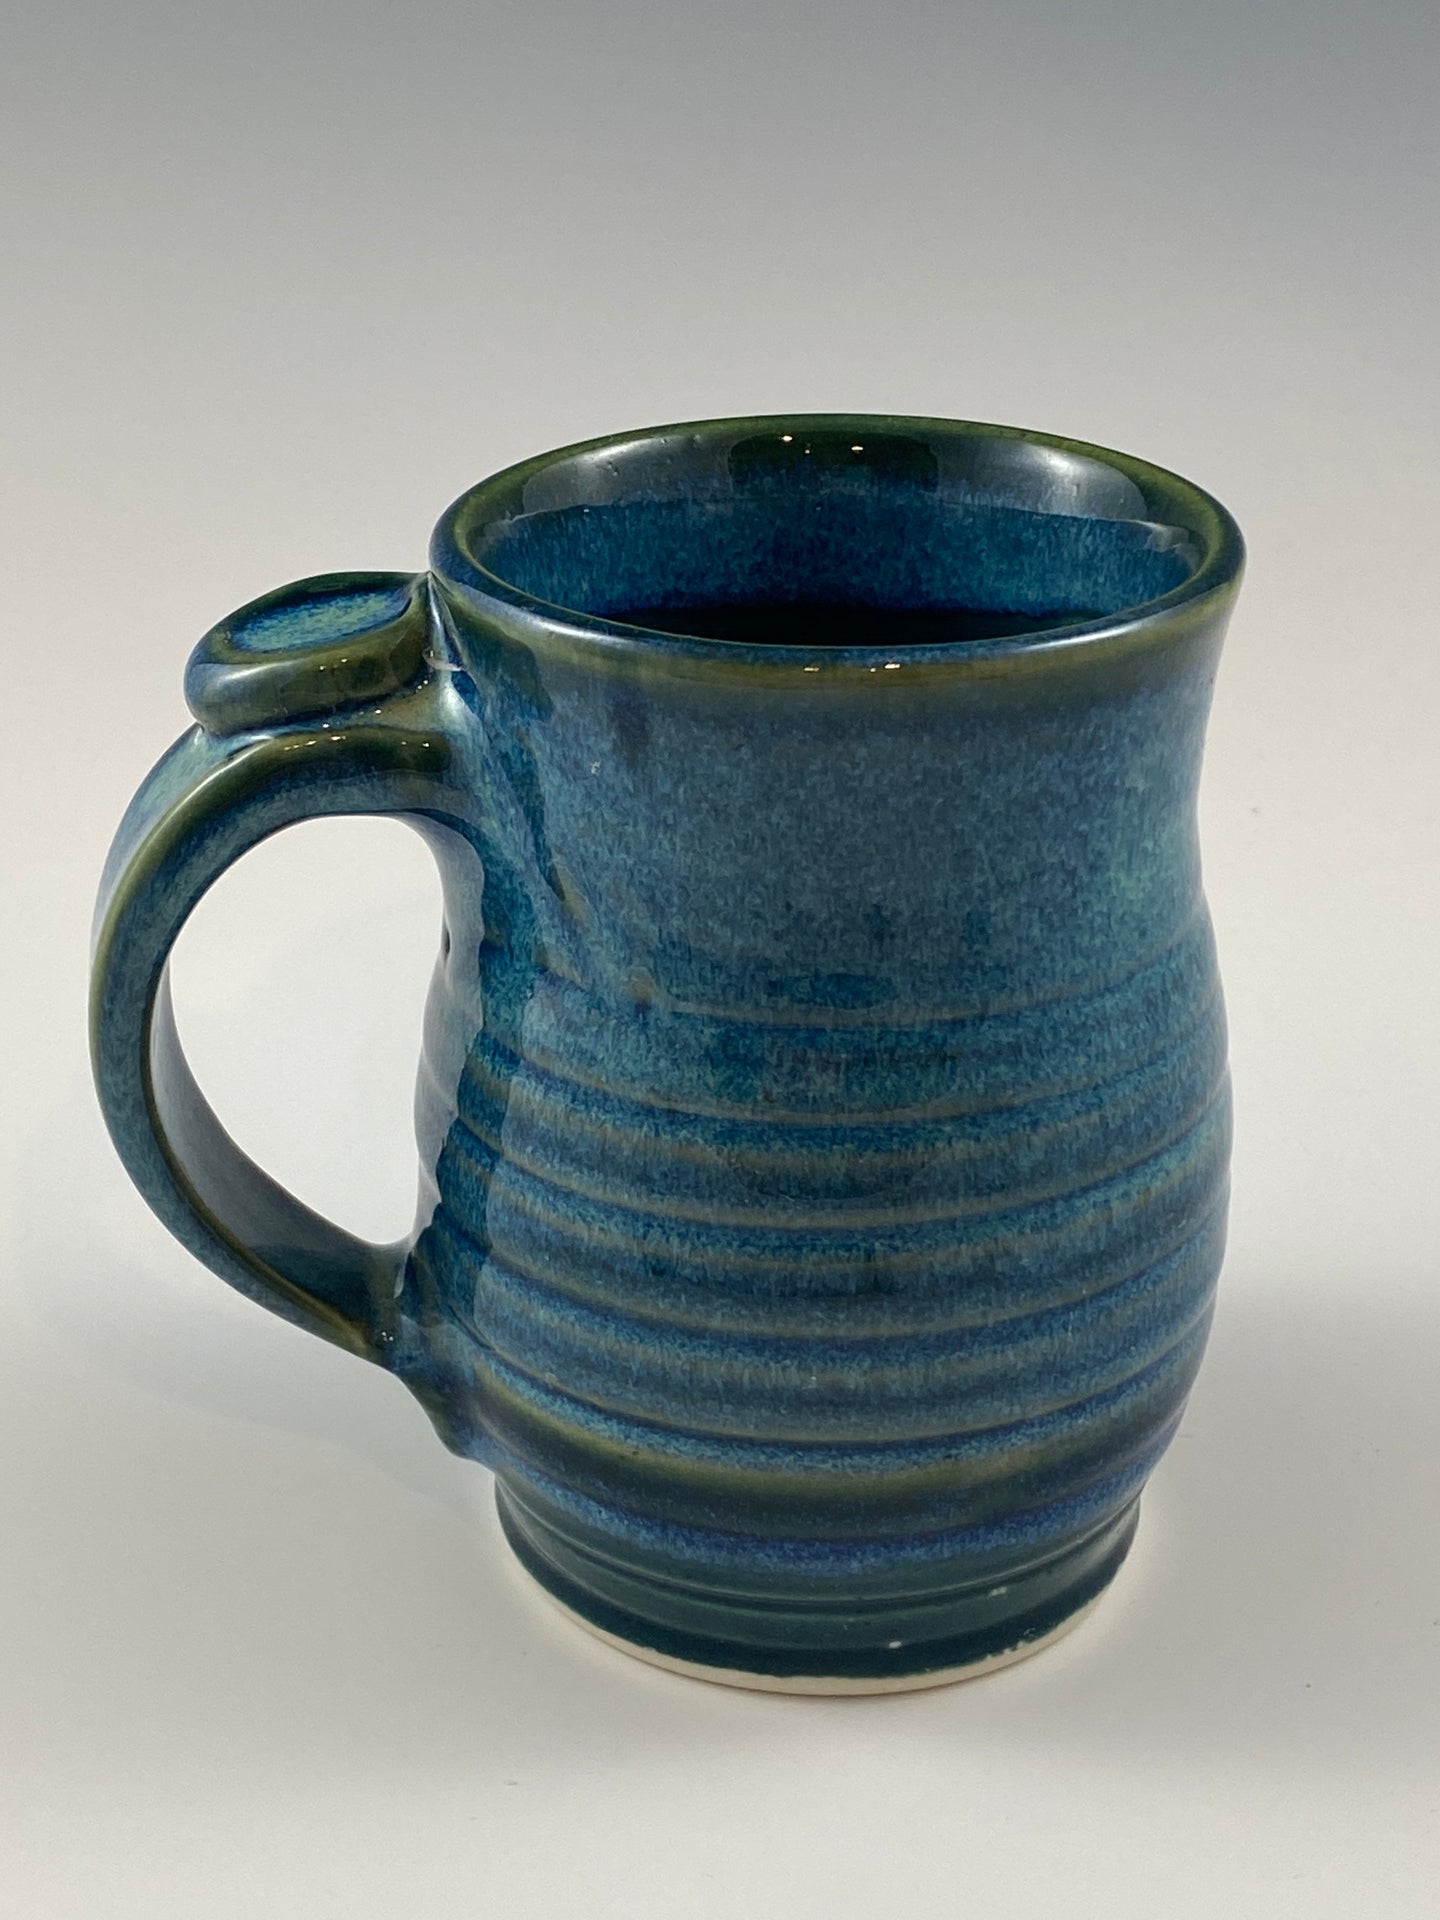 Aqua Blue 12 oz. Mug